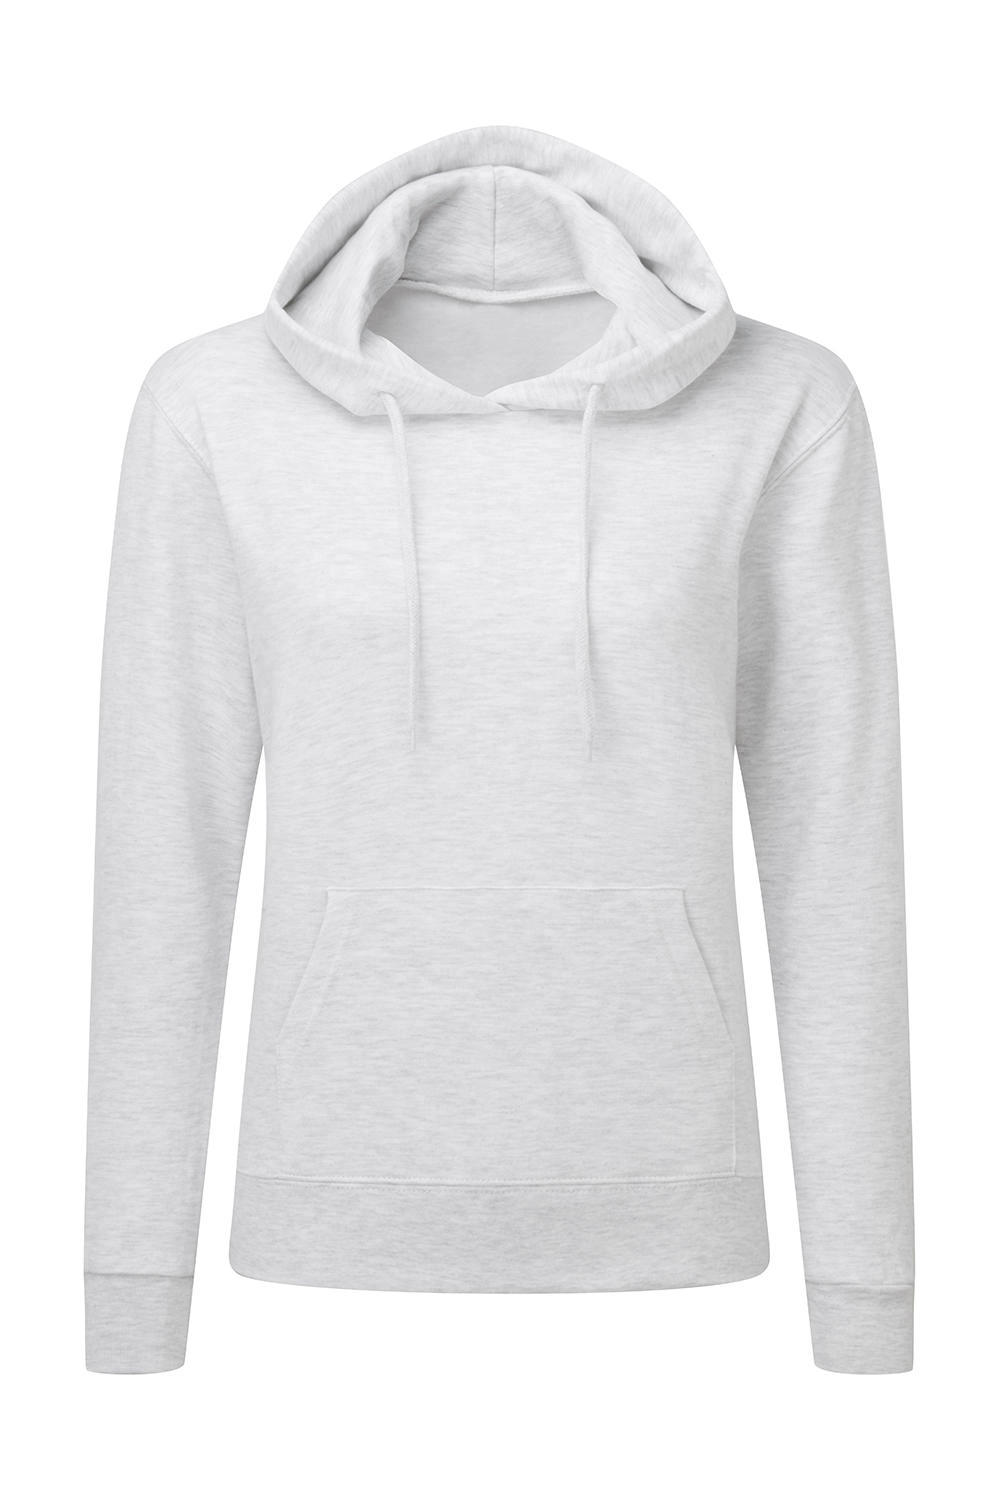 Hooded Sweatshirt Women zum Besticken und Bedrucken in der Farbe Ash Grey mit Ihren Logo, Schriftzug oder Motiv.